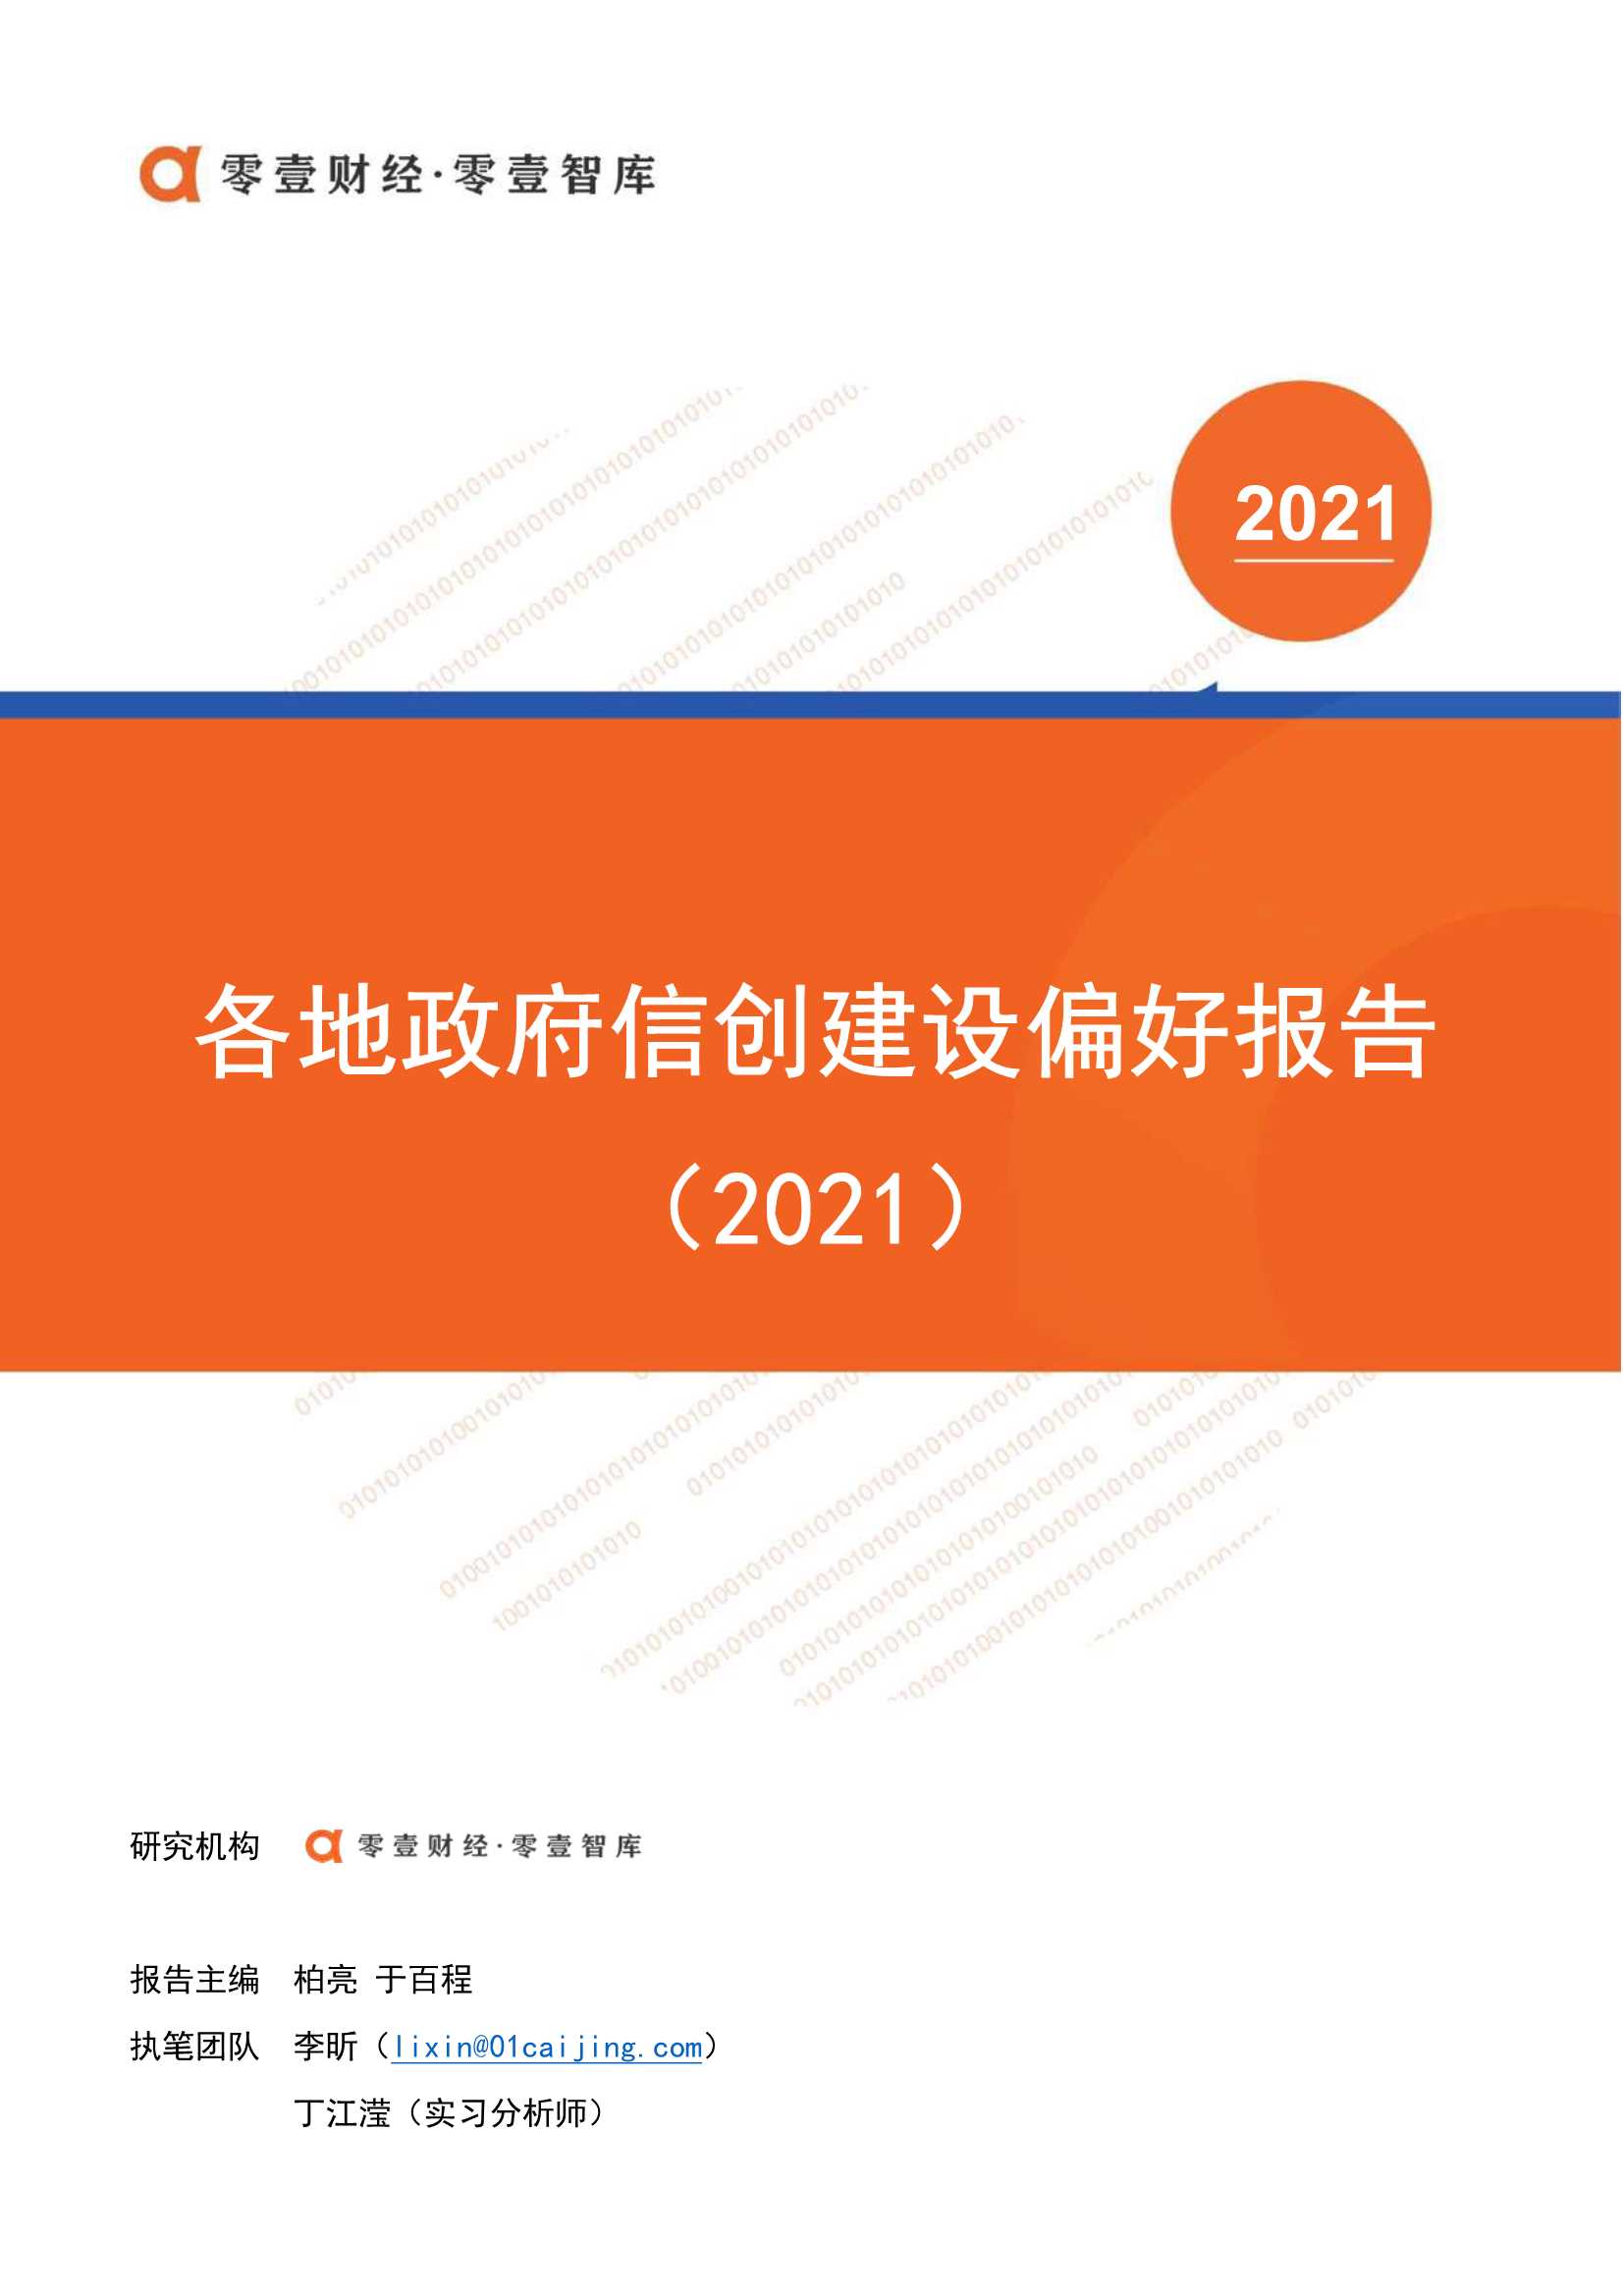 零壹智库-各地政府信创建设偏好报告(2021)-2021.12-19页